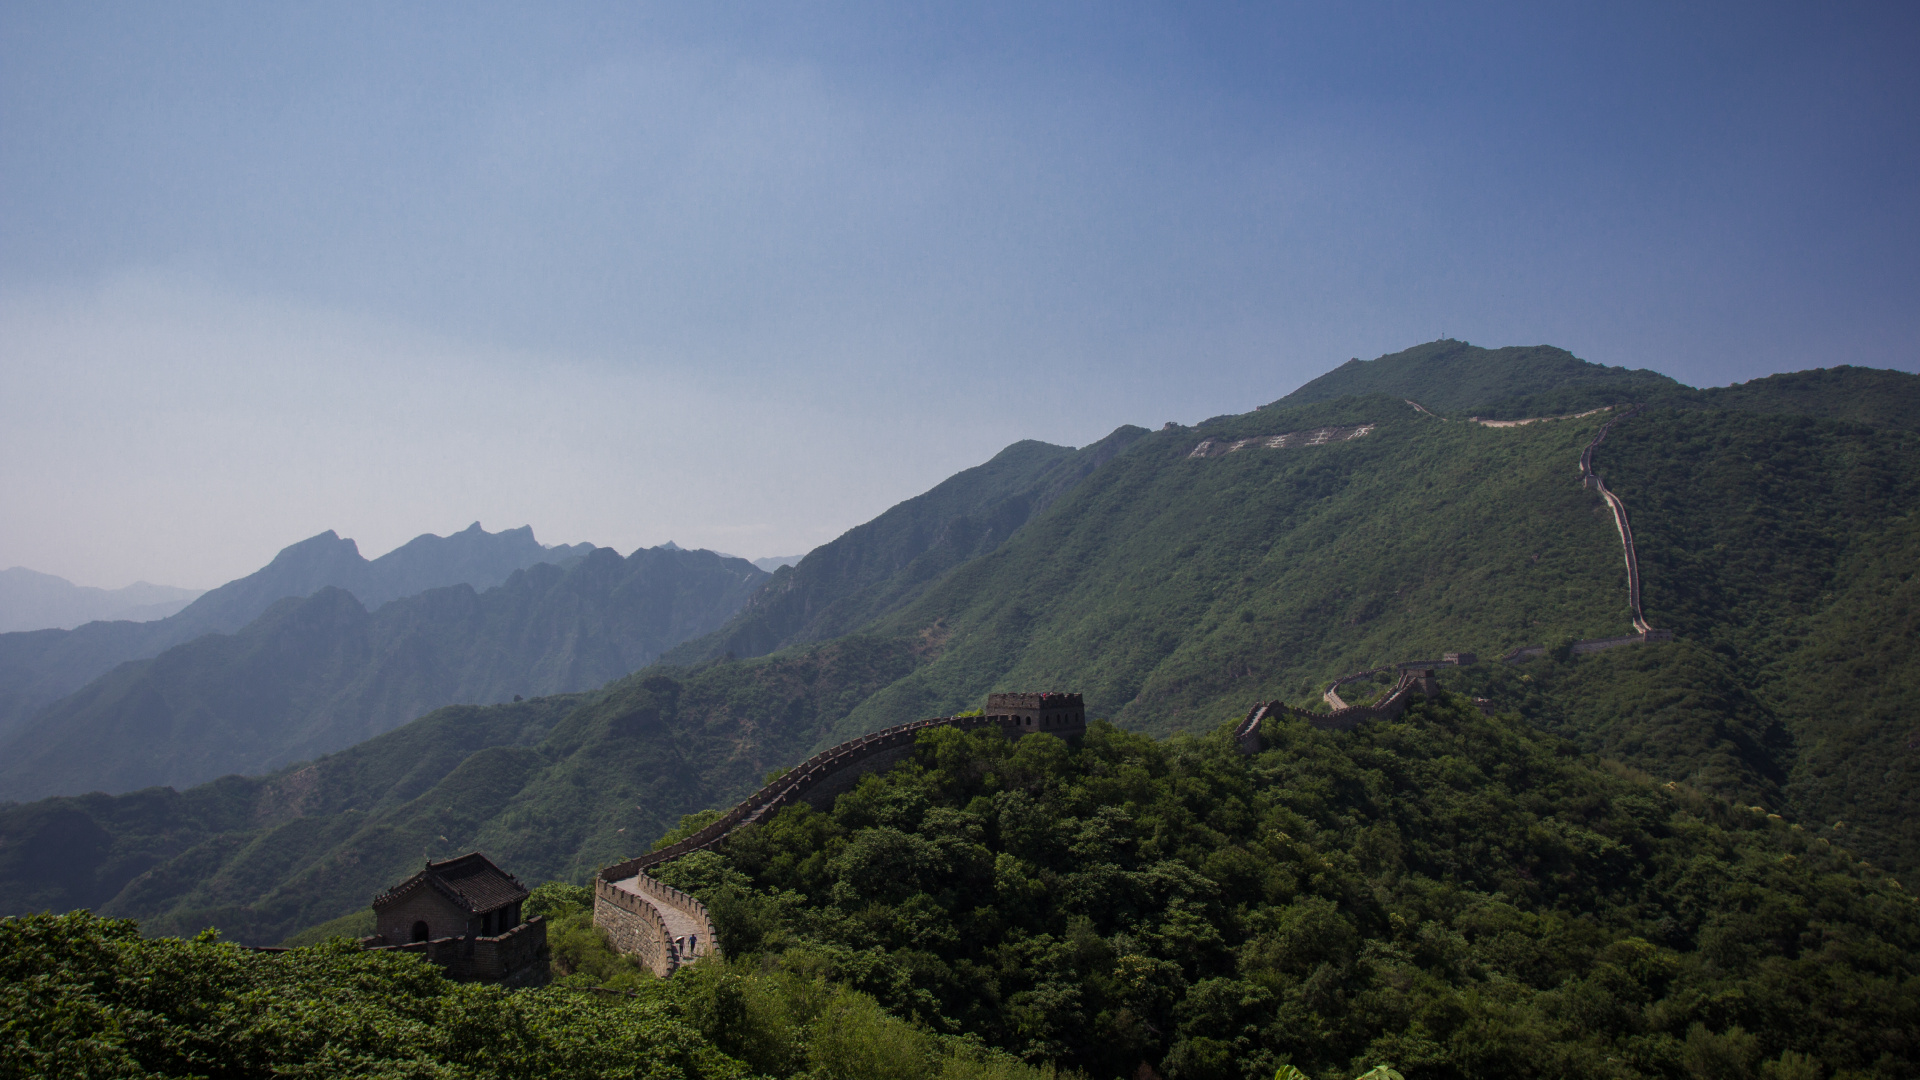 中国的长城, 多山的地貌, 山站, 高地, 植被 壁纸 1920x1080 允许